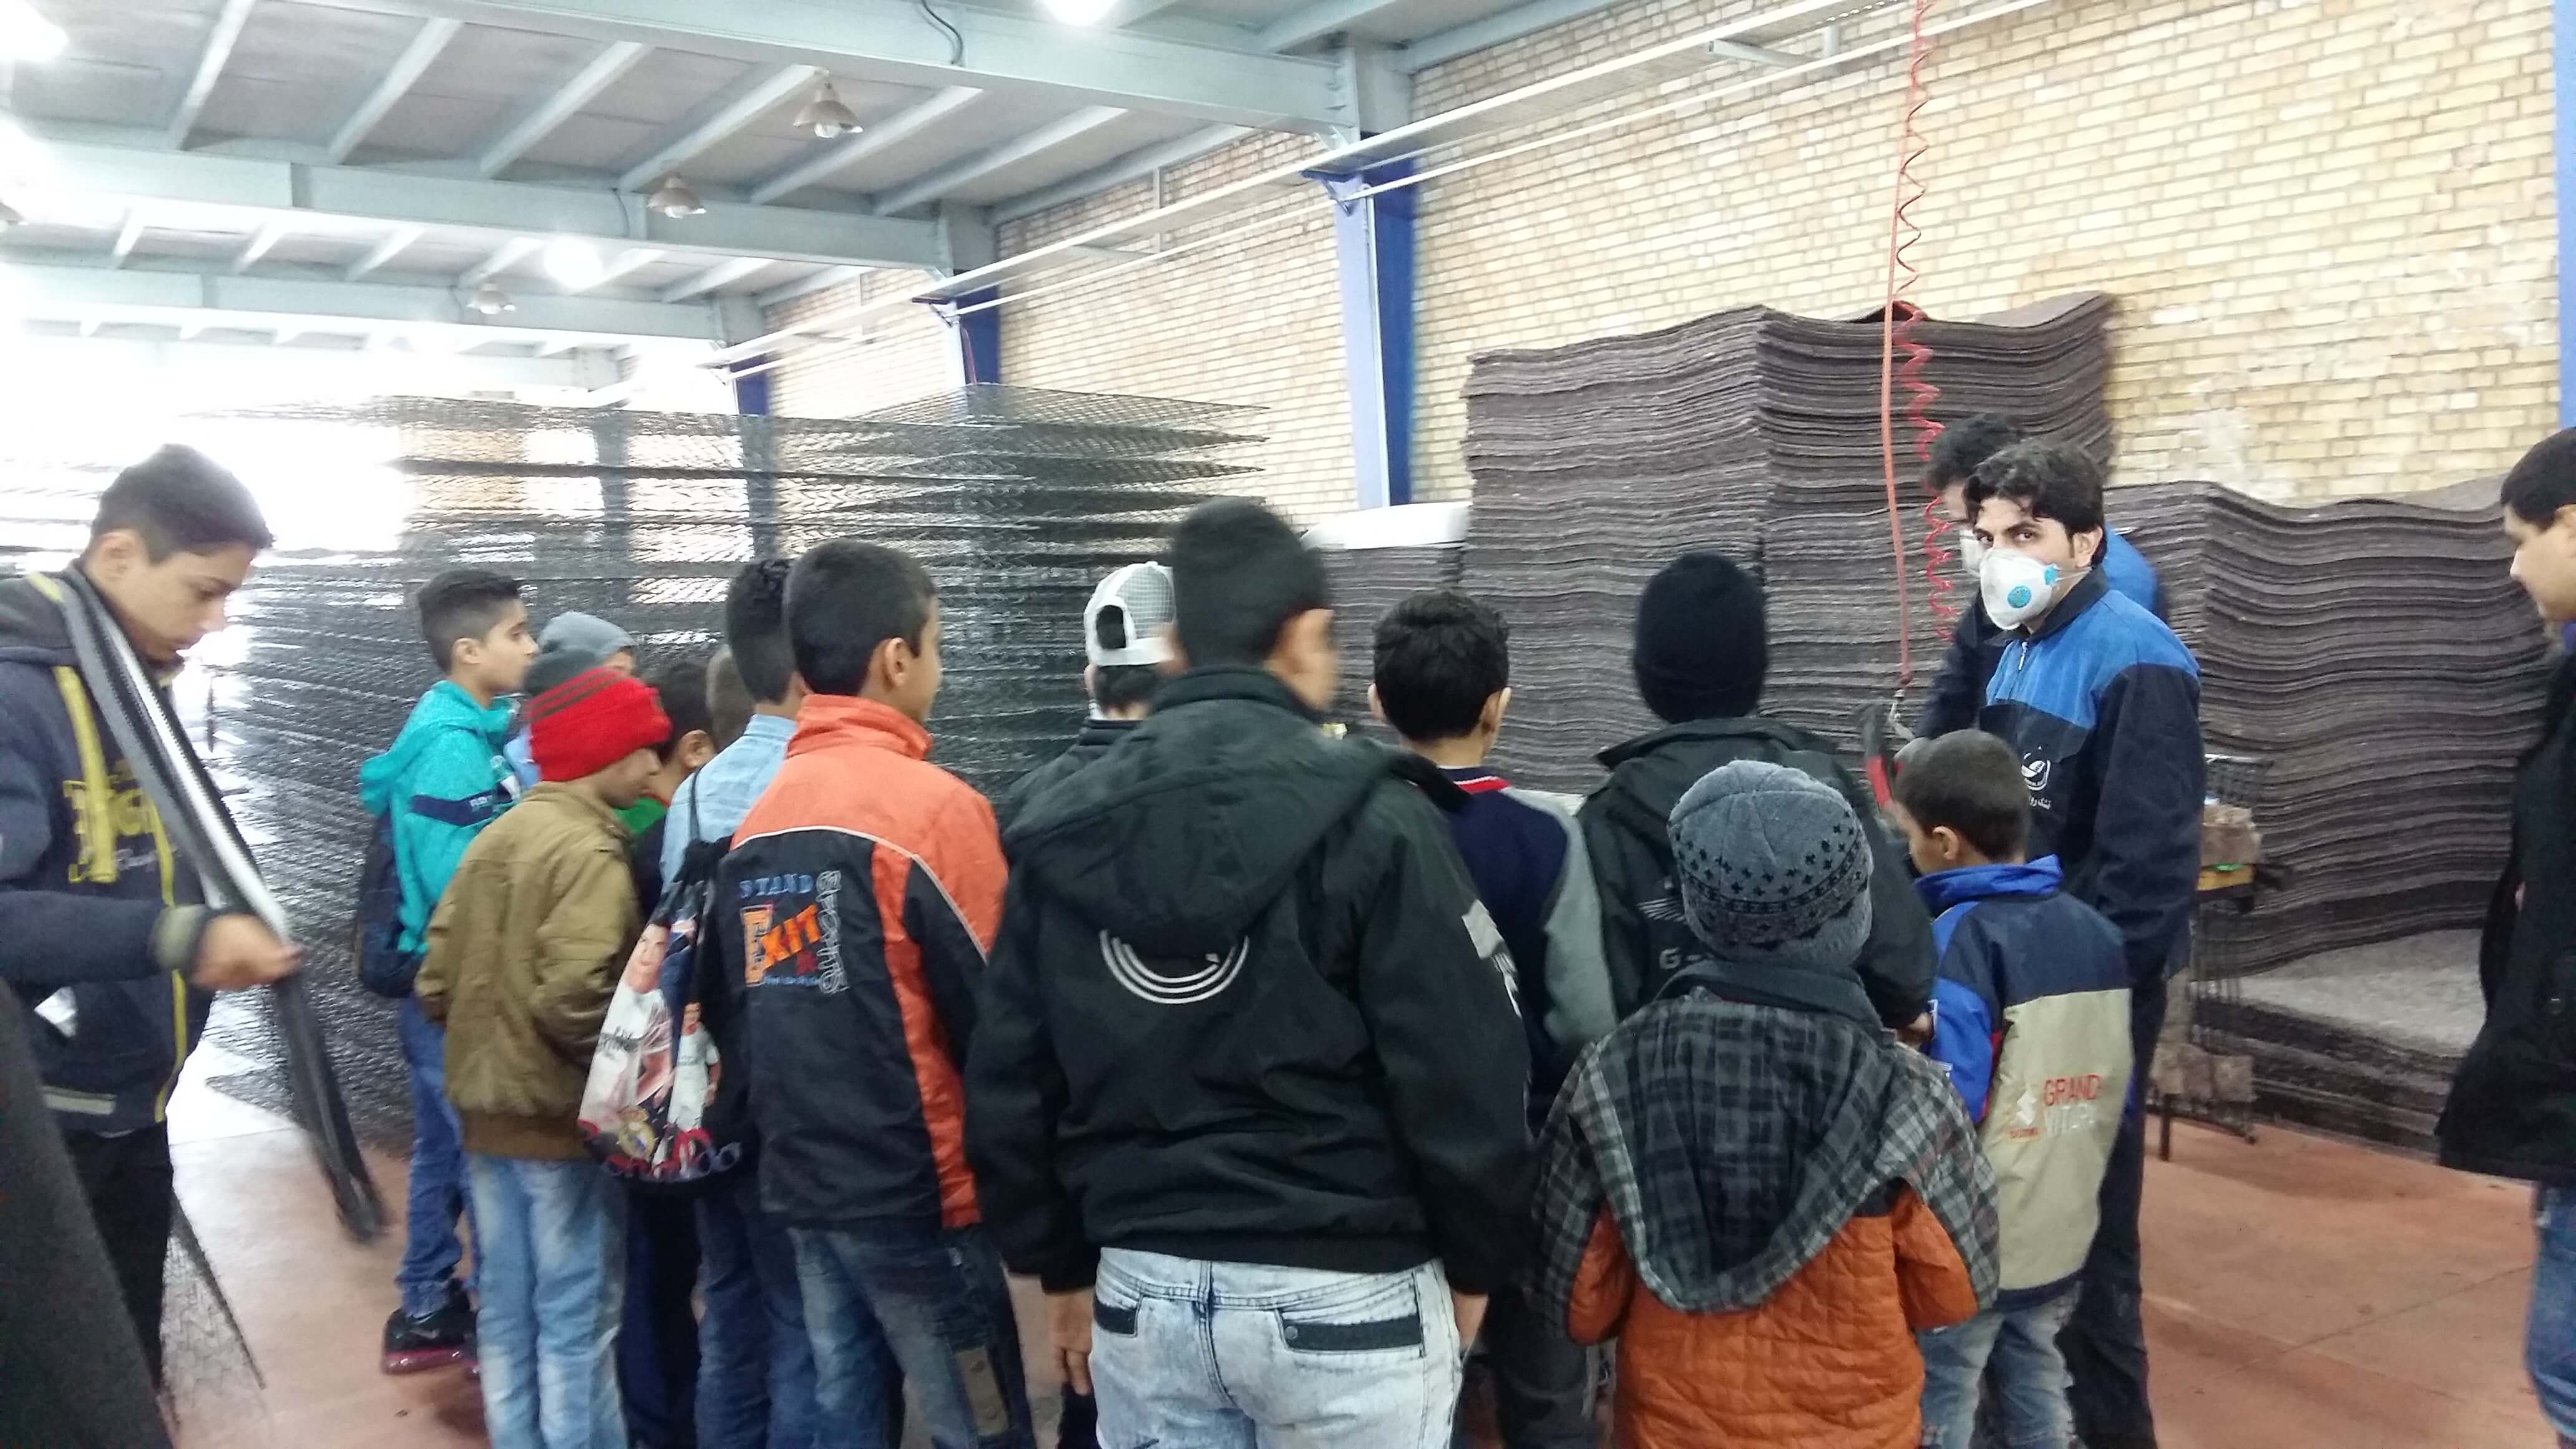 اعضای کانون نخبگان طلایی مهرآفرین از کارخانه تشک رویال آسایش بازدید کردند